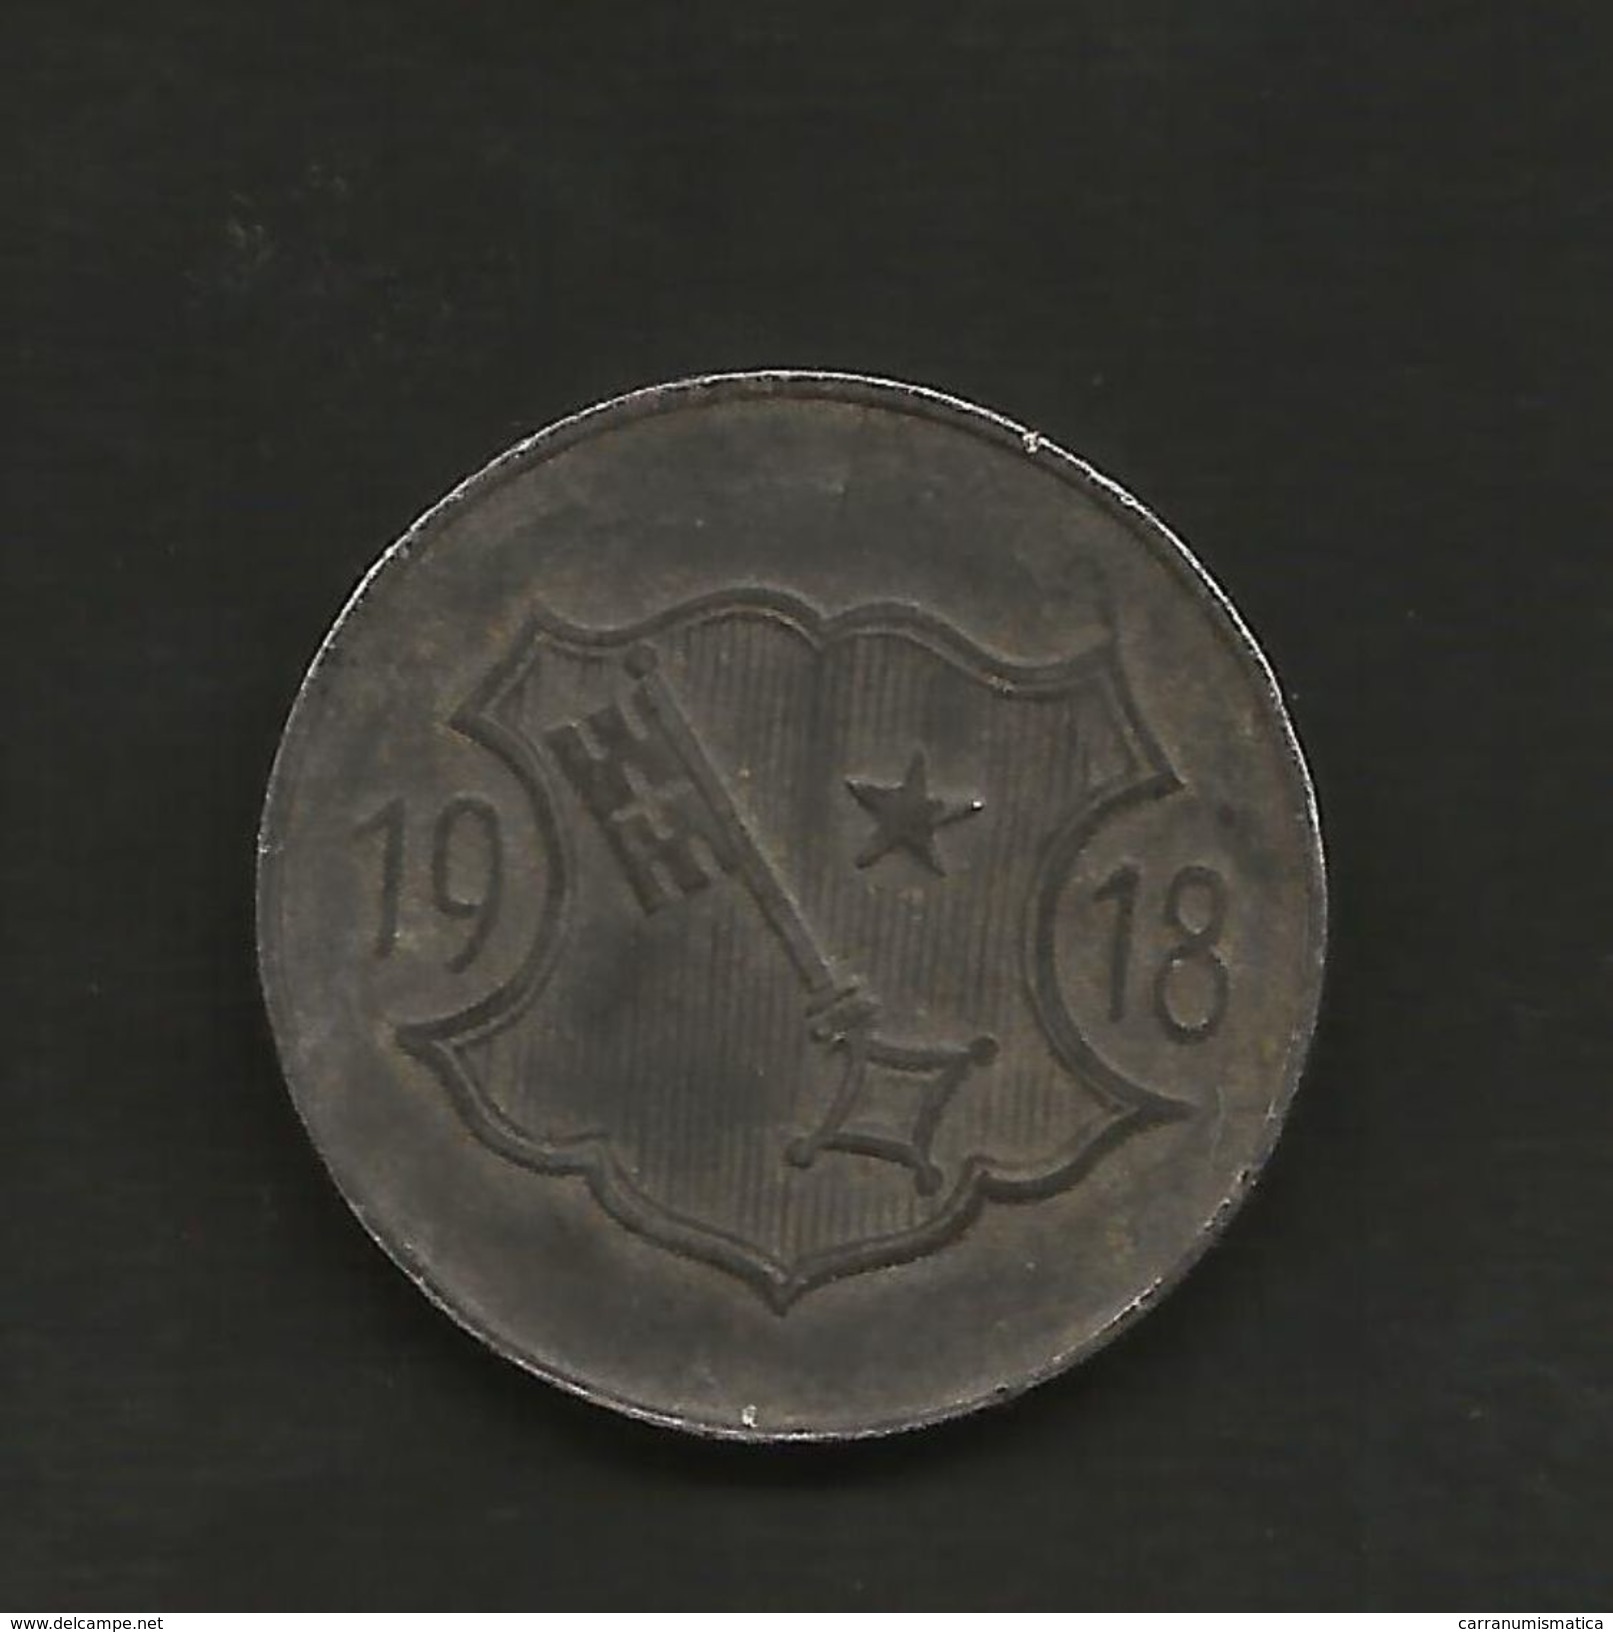 DEUTSCHLAND / GERMANY - NOTGELD - Stadt WORMS - 10 Pfennig (1918) Zink / Zinc / Zinco - Notgeld